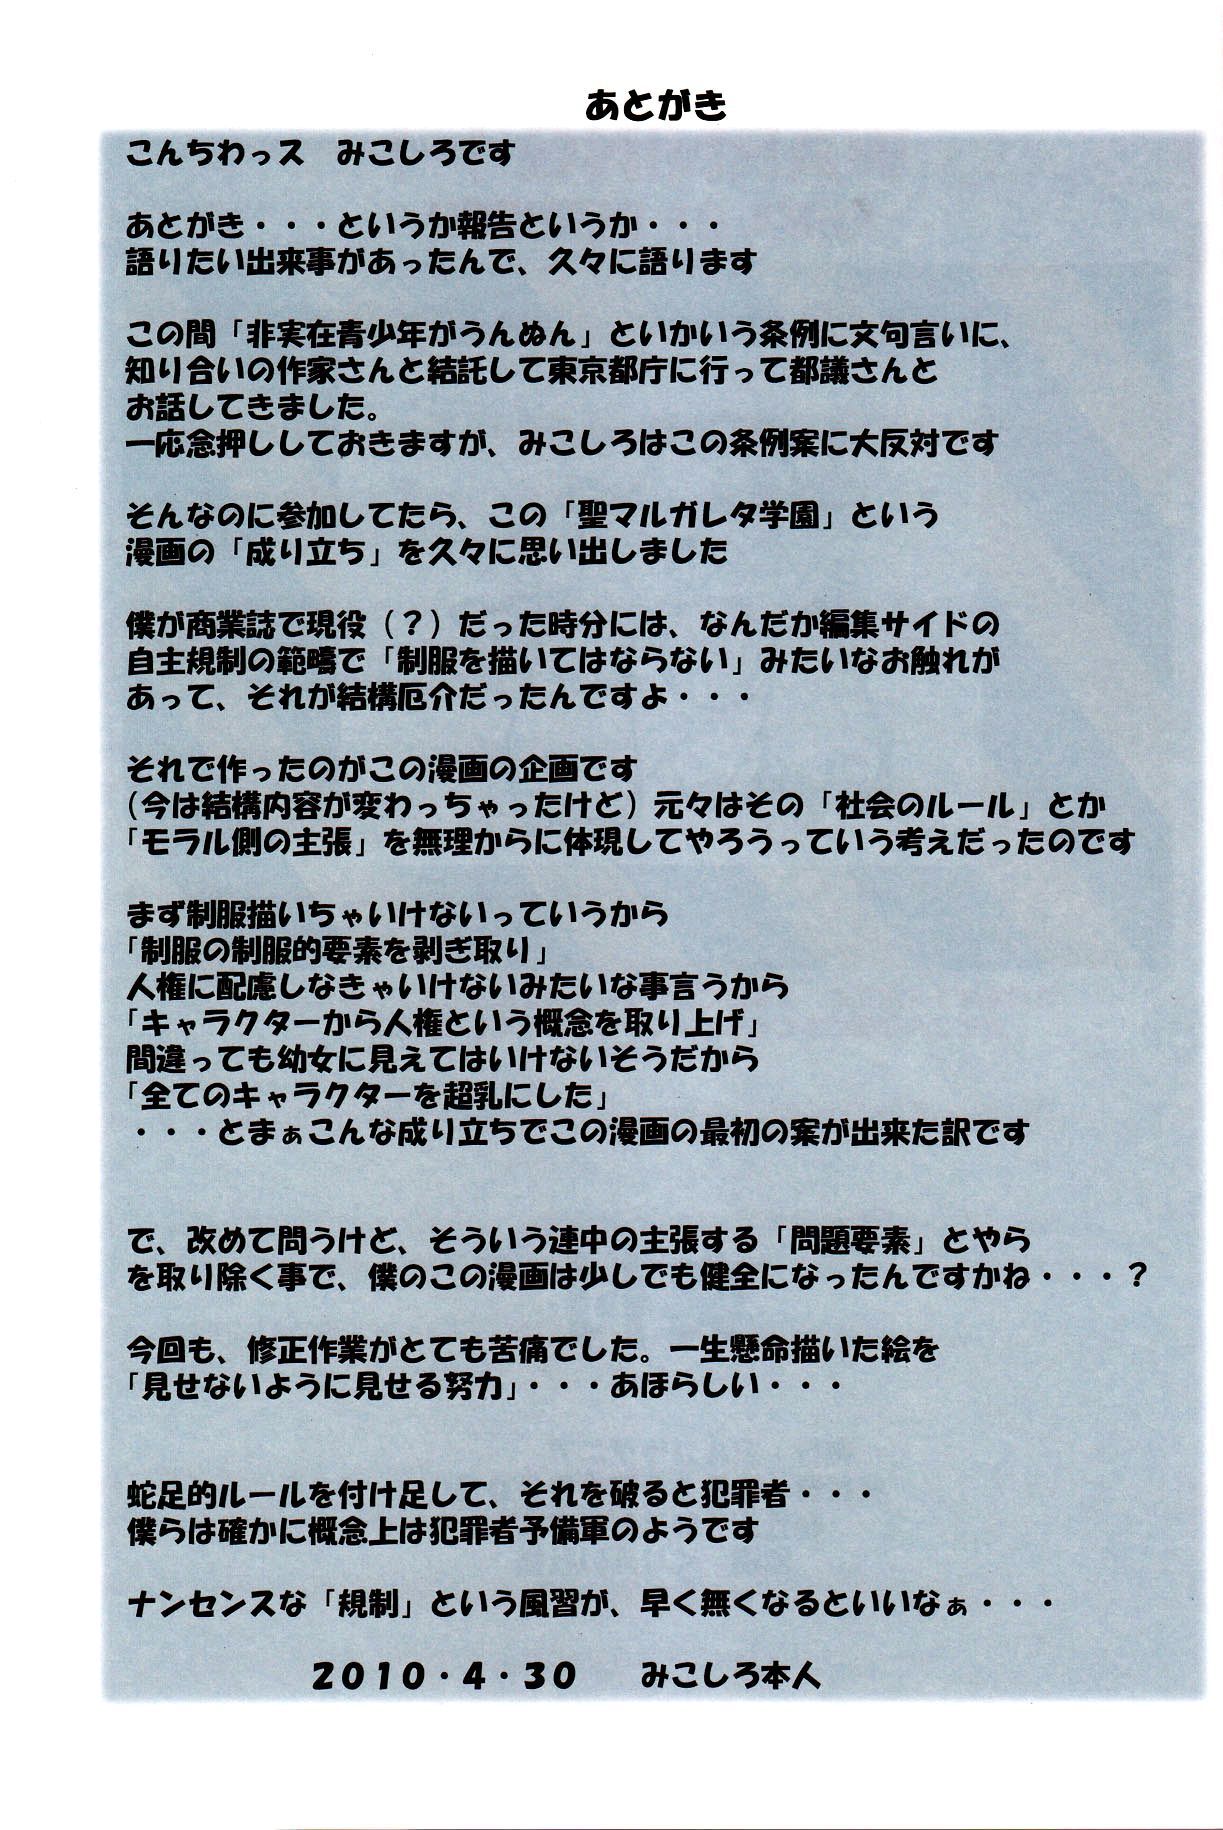 (comic1â˜†4) algolagnia (mikoshiro honnin) st. margarida gakuen Preto Arquivo 2 b.e.c. verifica parte 3